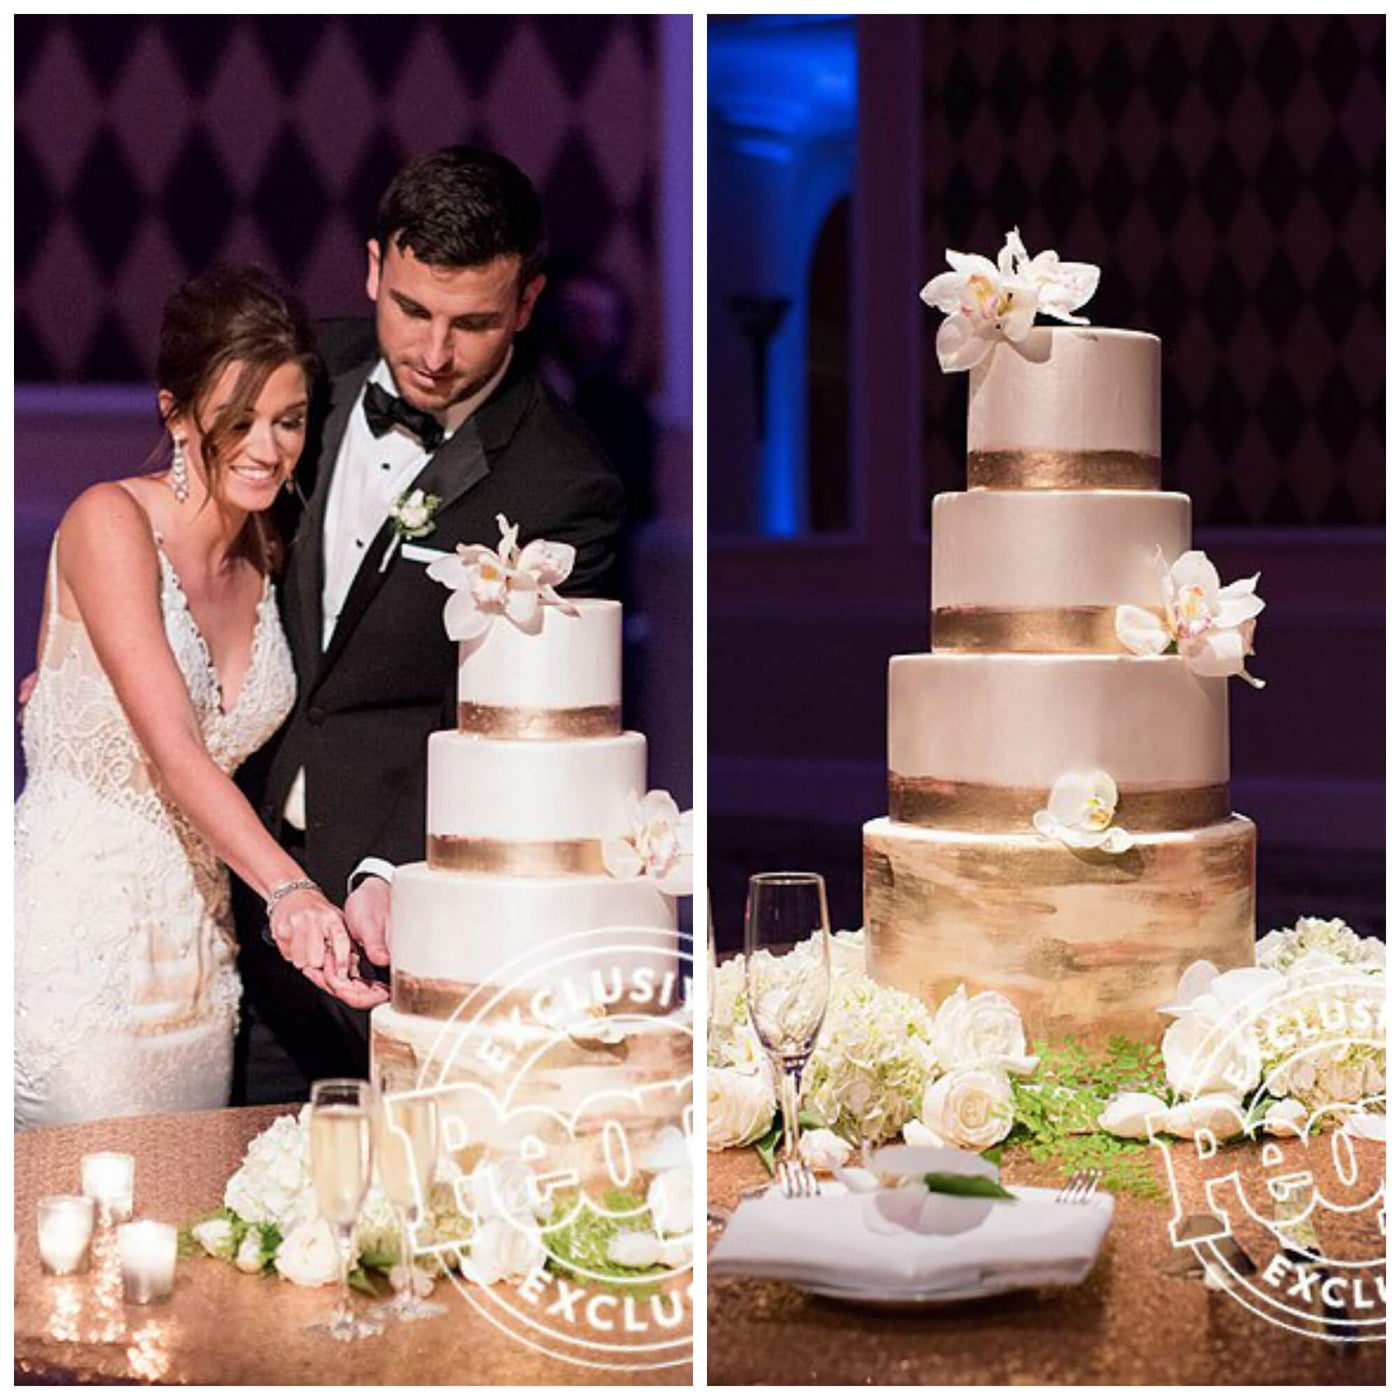 Bachelor Tanner & Jade Wedding Cake - Sweet E's Bake Shop